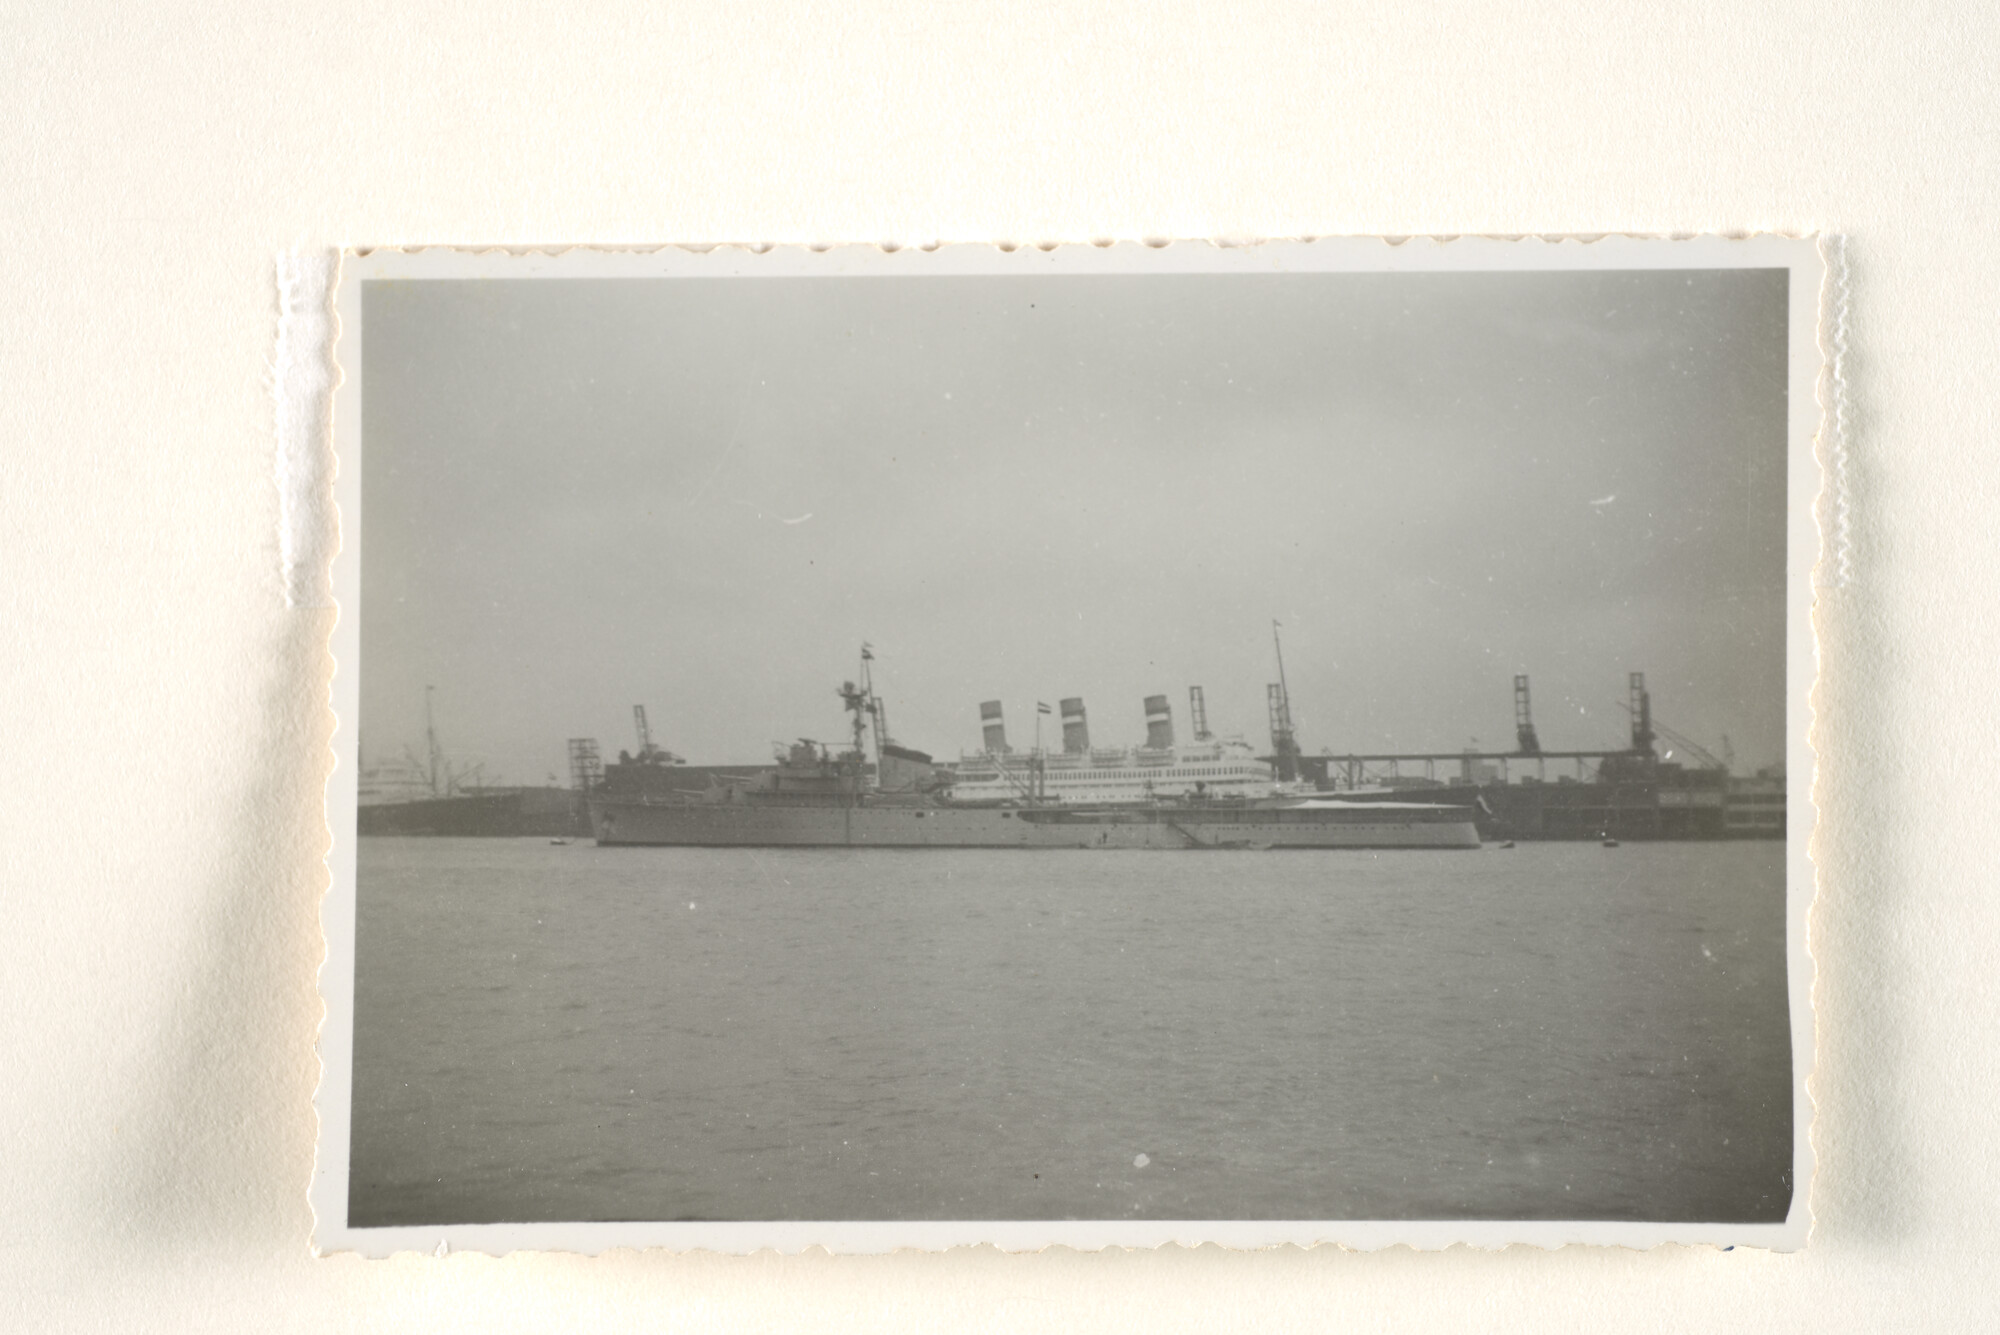 1995.1350; De flottieljeleider Hr.Ms. 'Tromp', afgemeerd in de haven van Rotterdam, vermoedelijk tijdens de vlootrevue in april 1939; foto